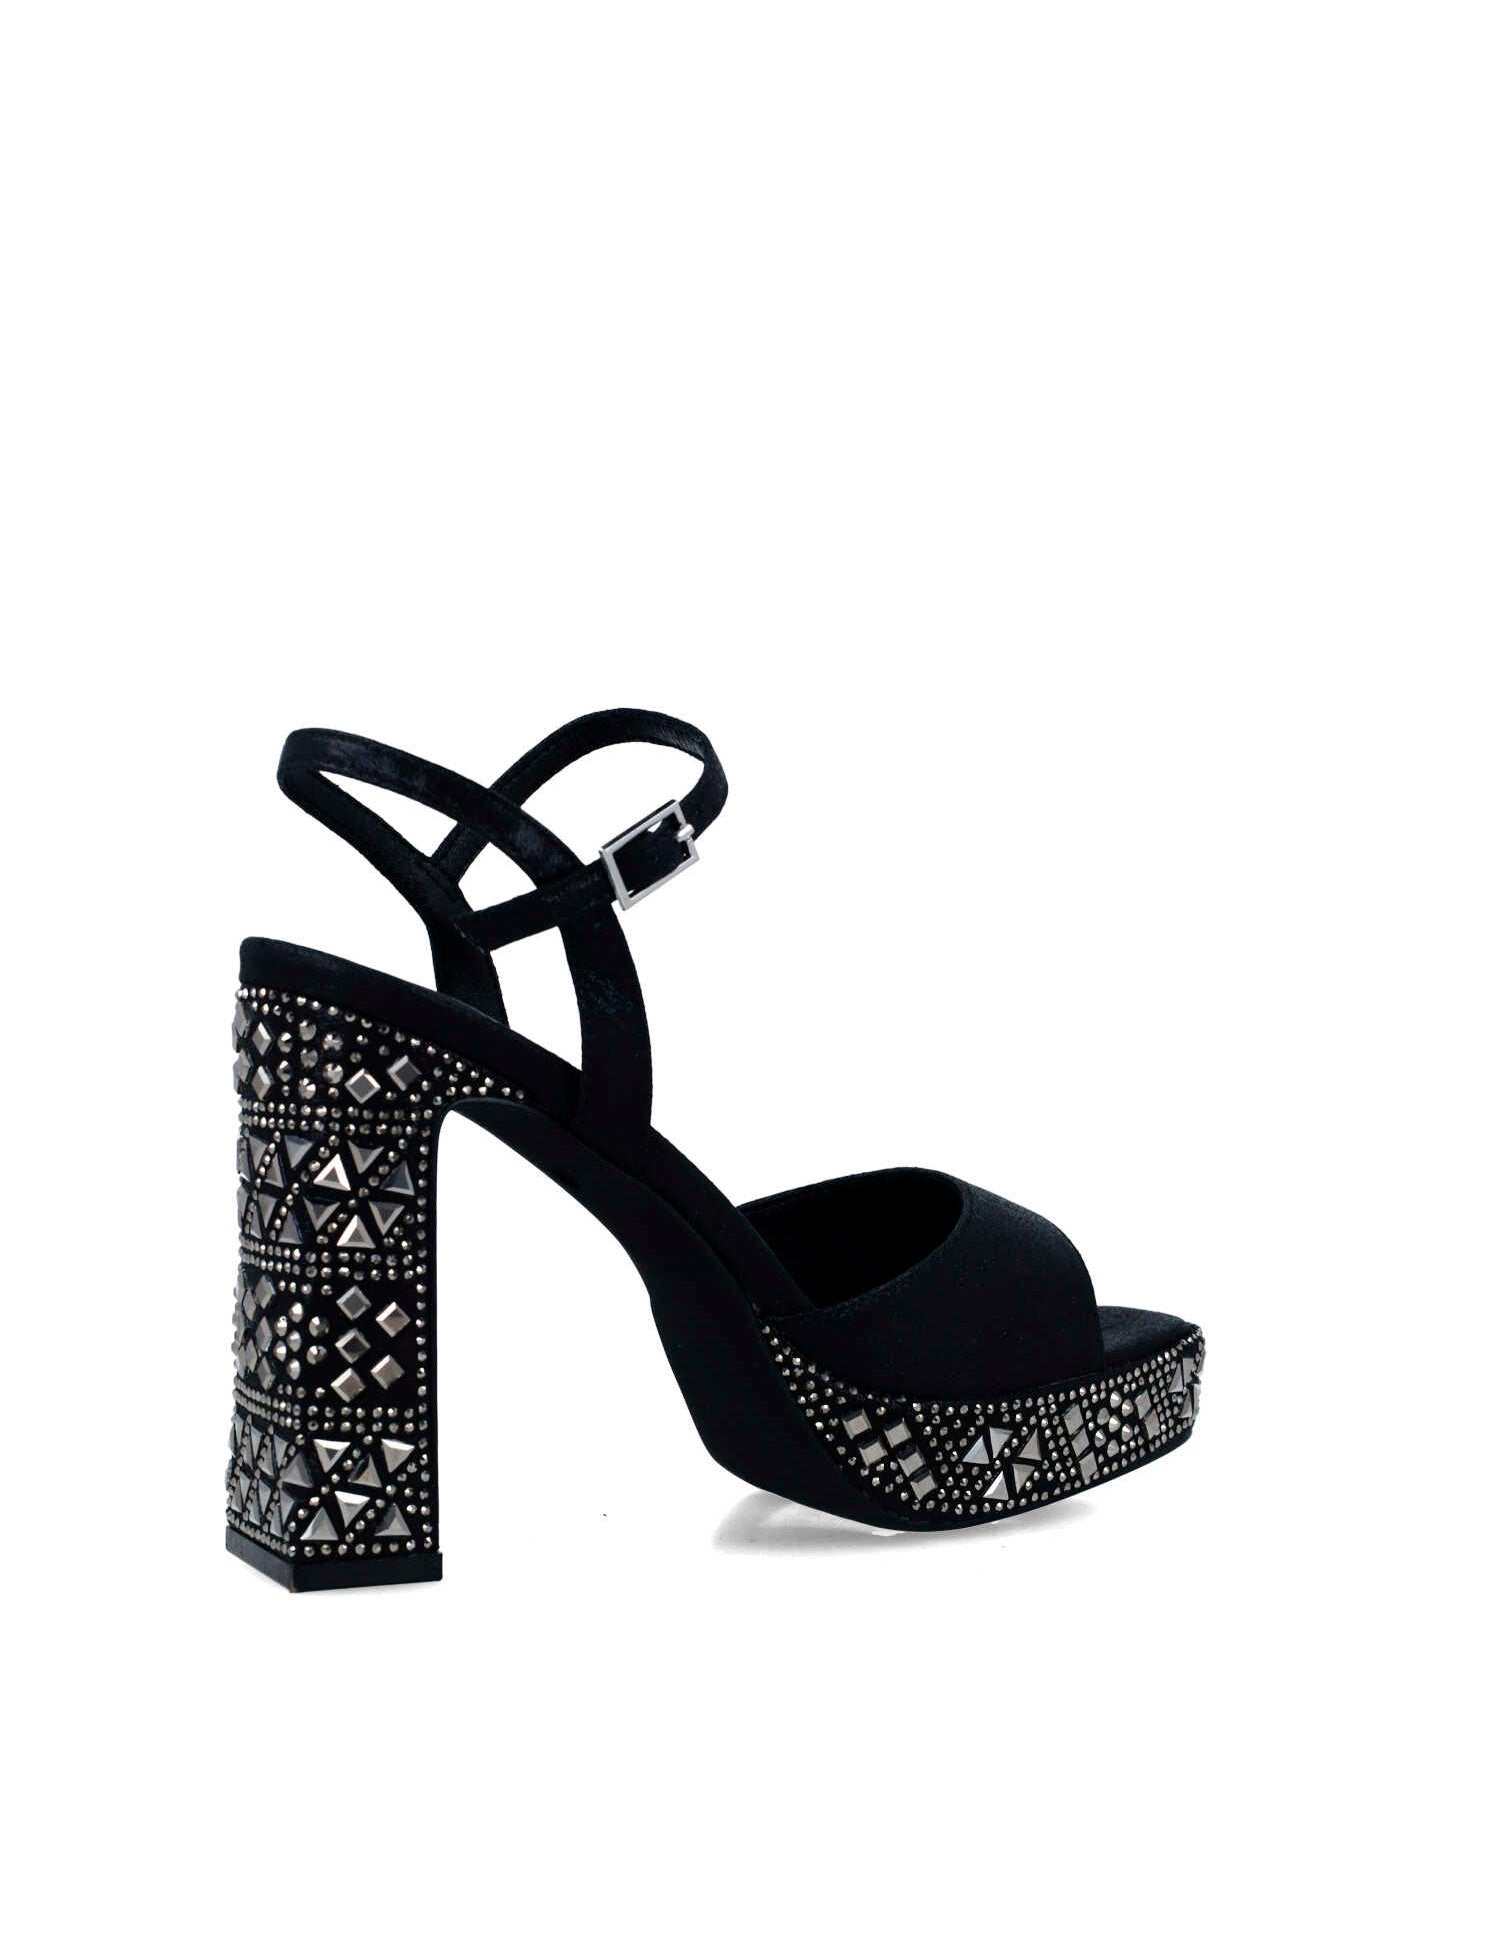 Black Embellished Platform Sandals_24877_01_03